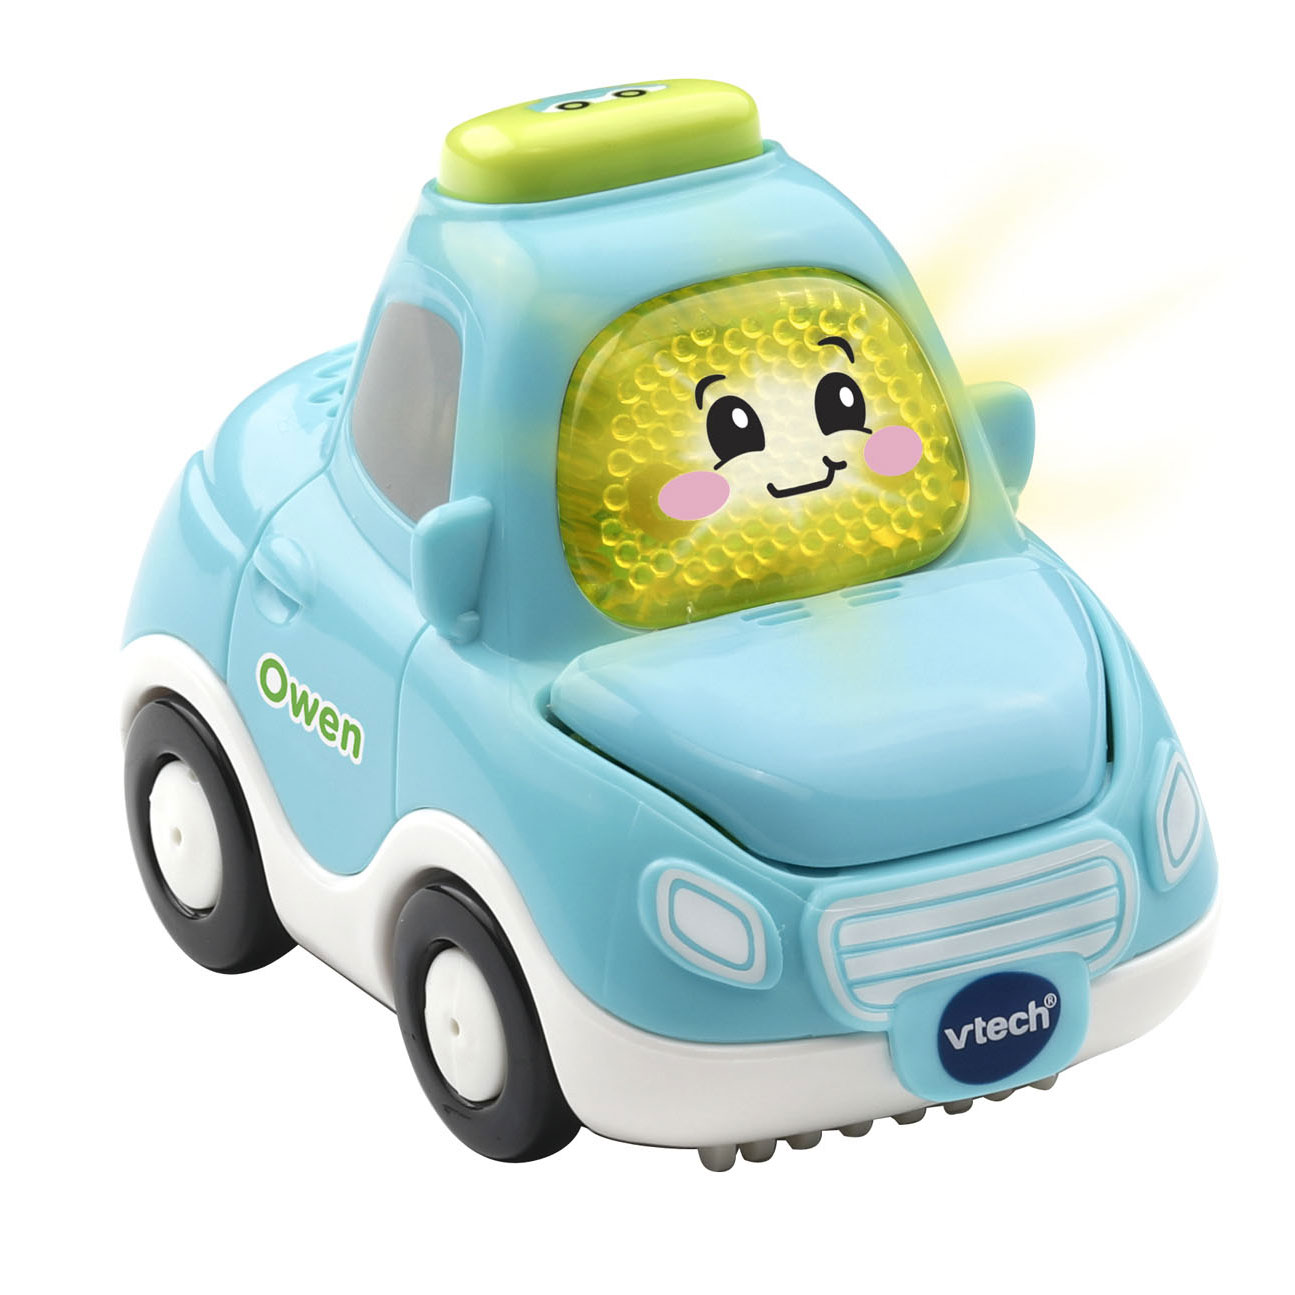 VTech Toet Toet Cars - Owen, Tygo | Thimble Toys